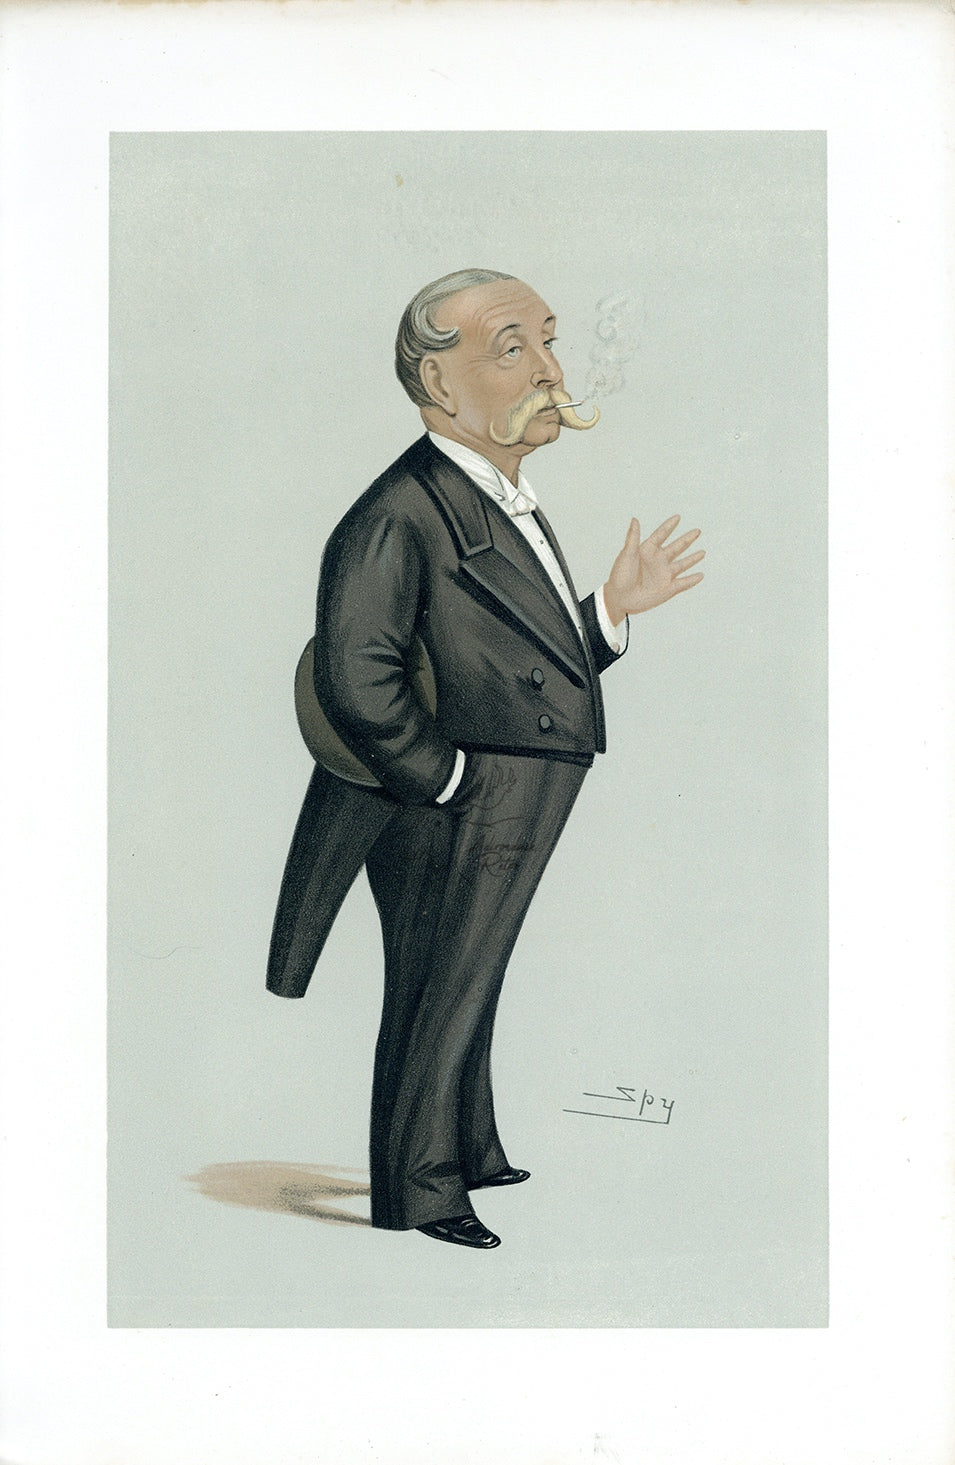 1889 Vanity Fair Caricature Proof Plate by SPY - Demtry Soltykoff Spy Print